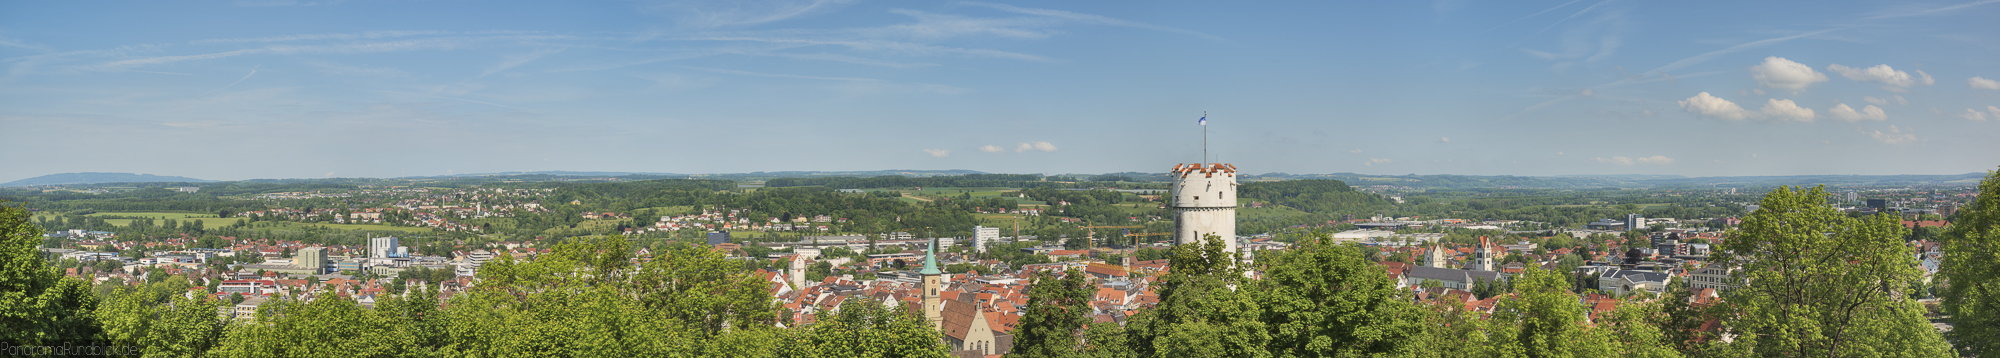 Panoramafoto von der hystorischen Altstadt Ravensburg 